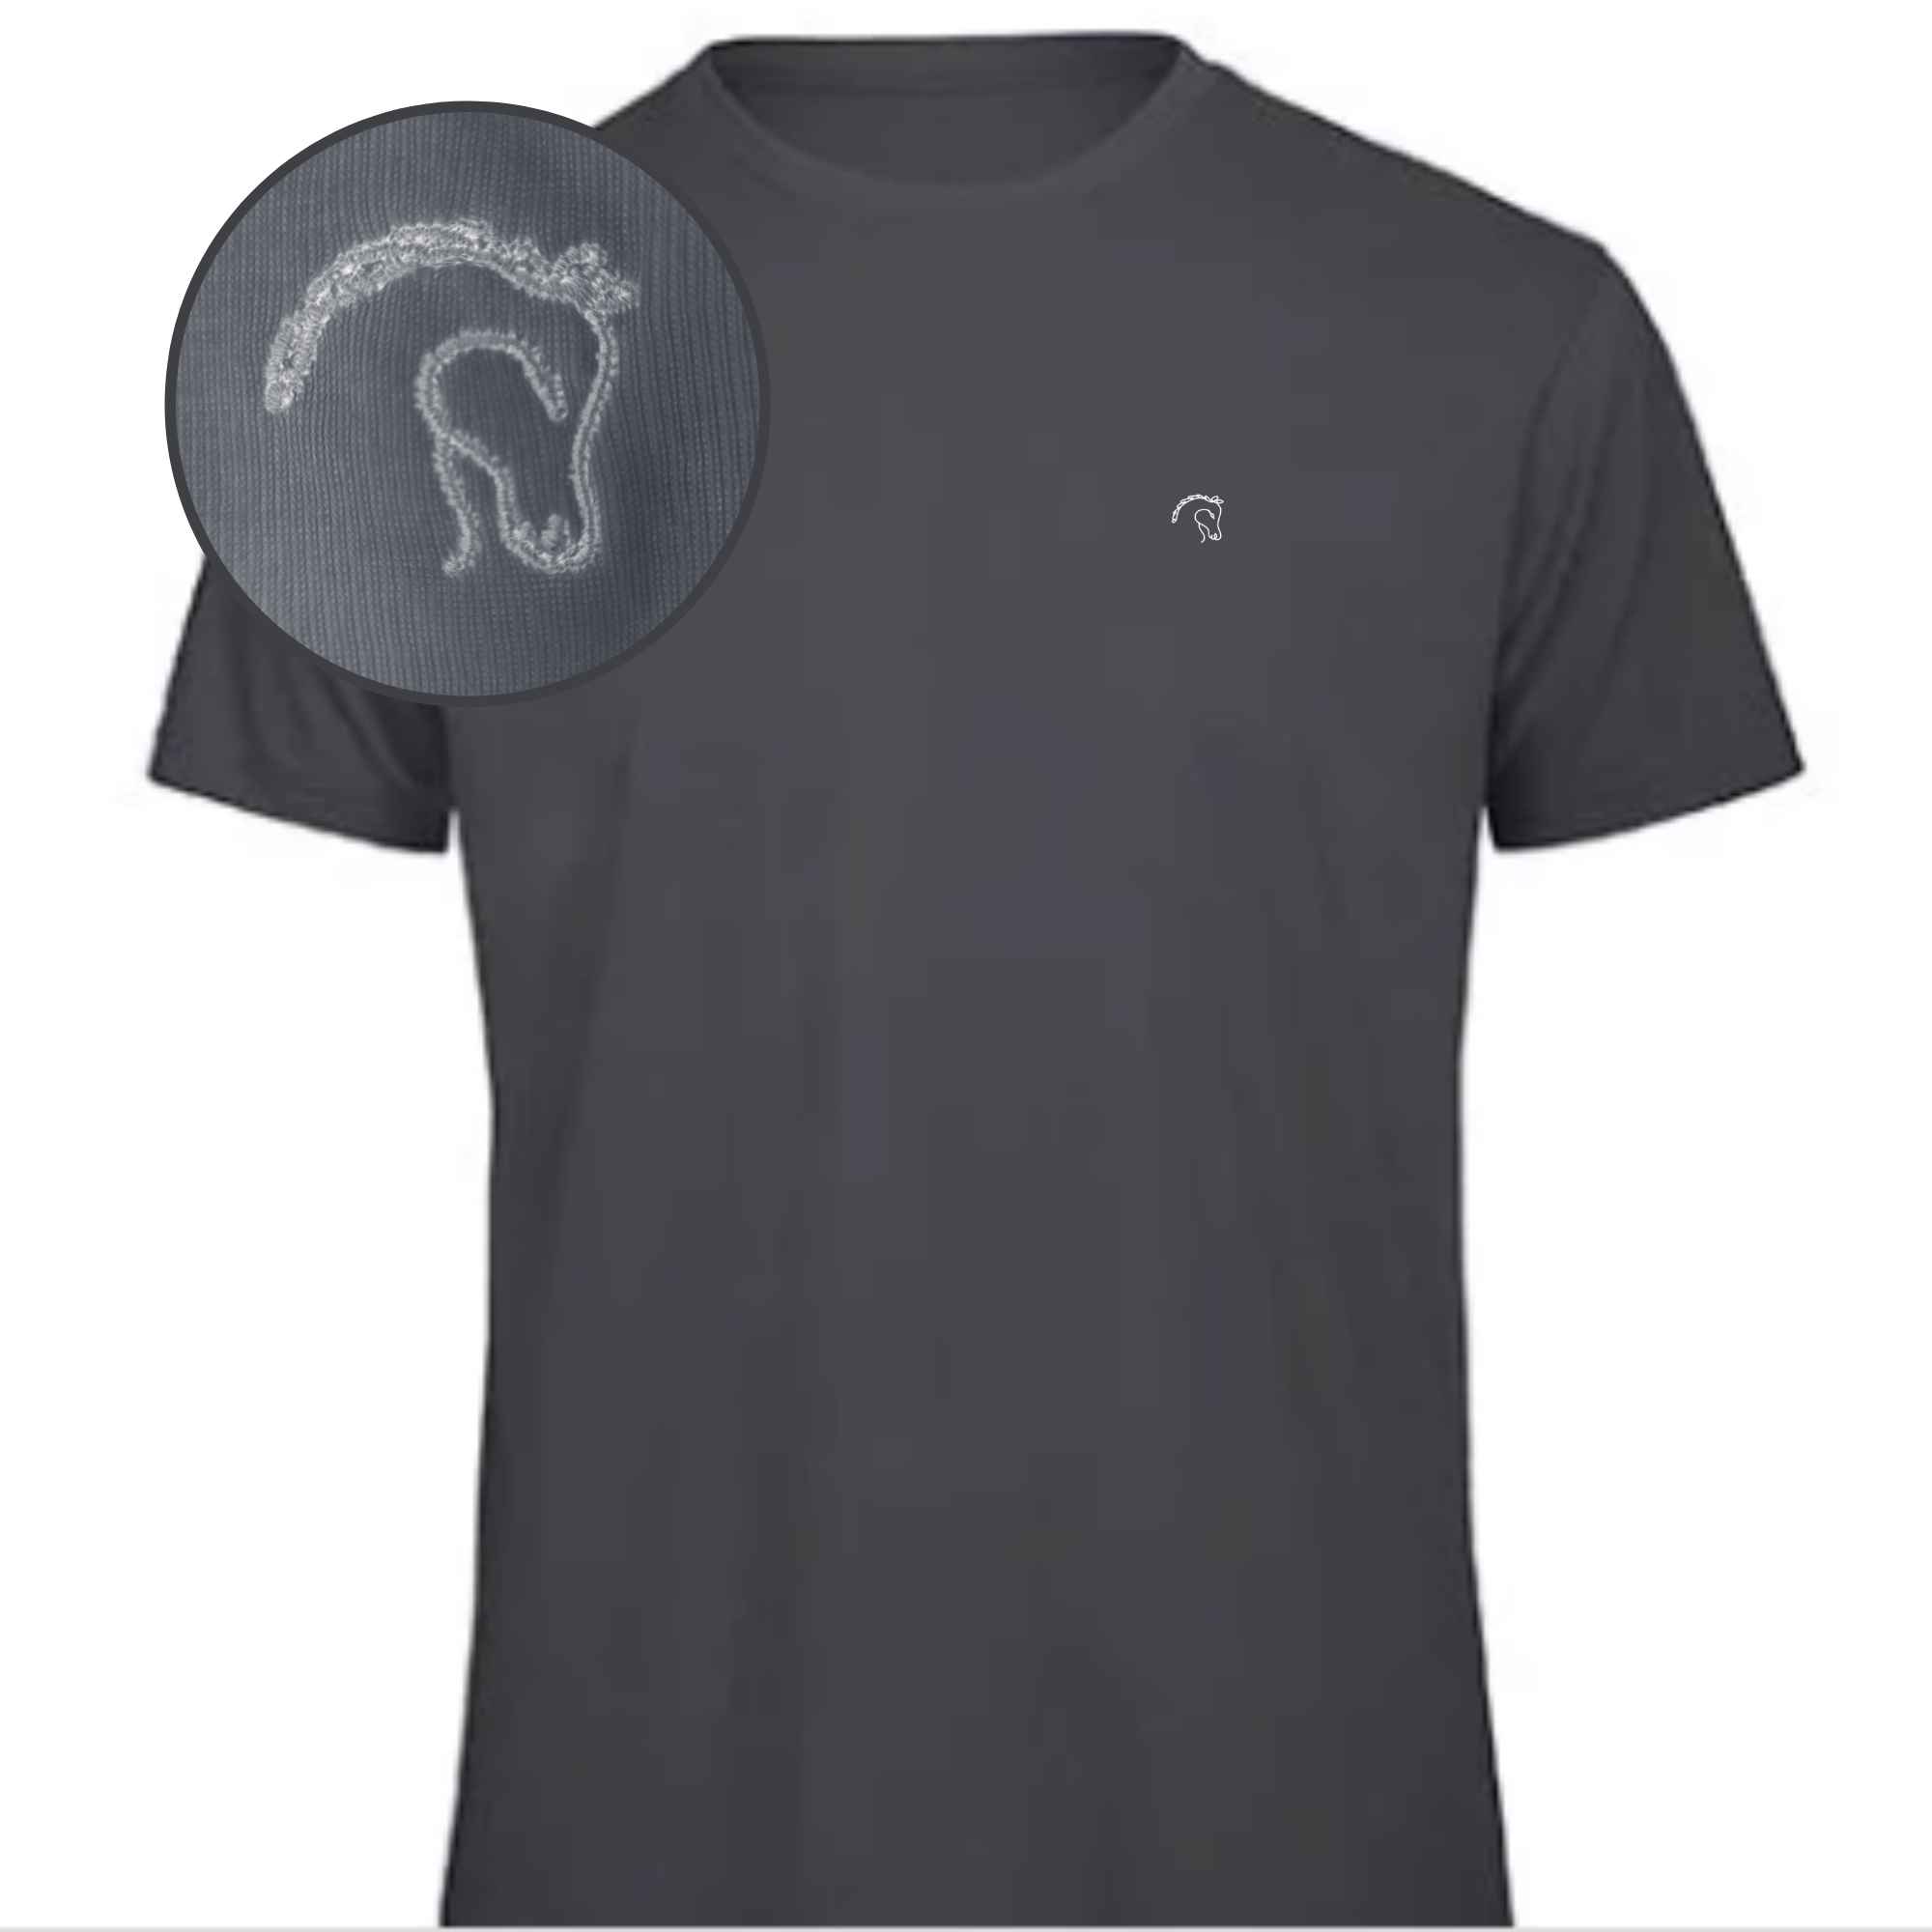 T-Shirt mit Pferdekopf auf das Hemd gestickt für Pferdeliebhaber